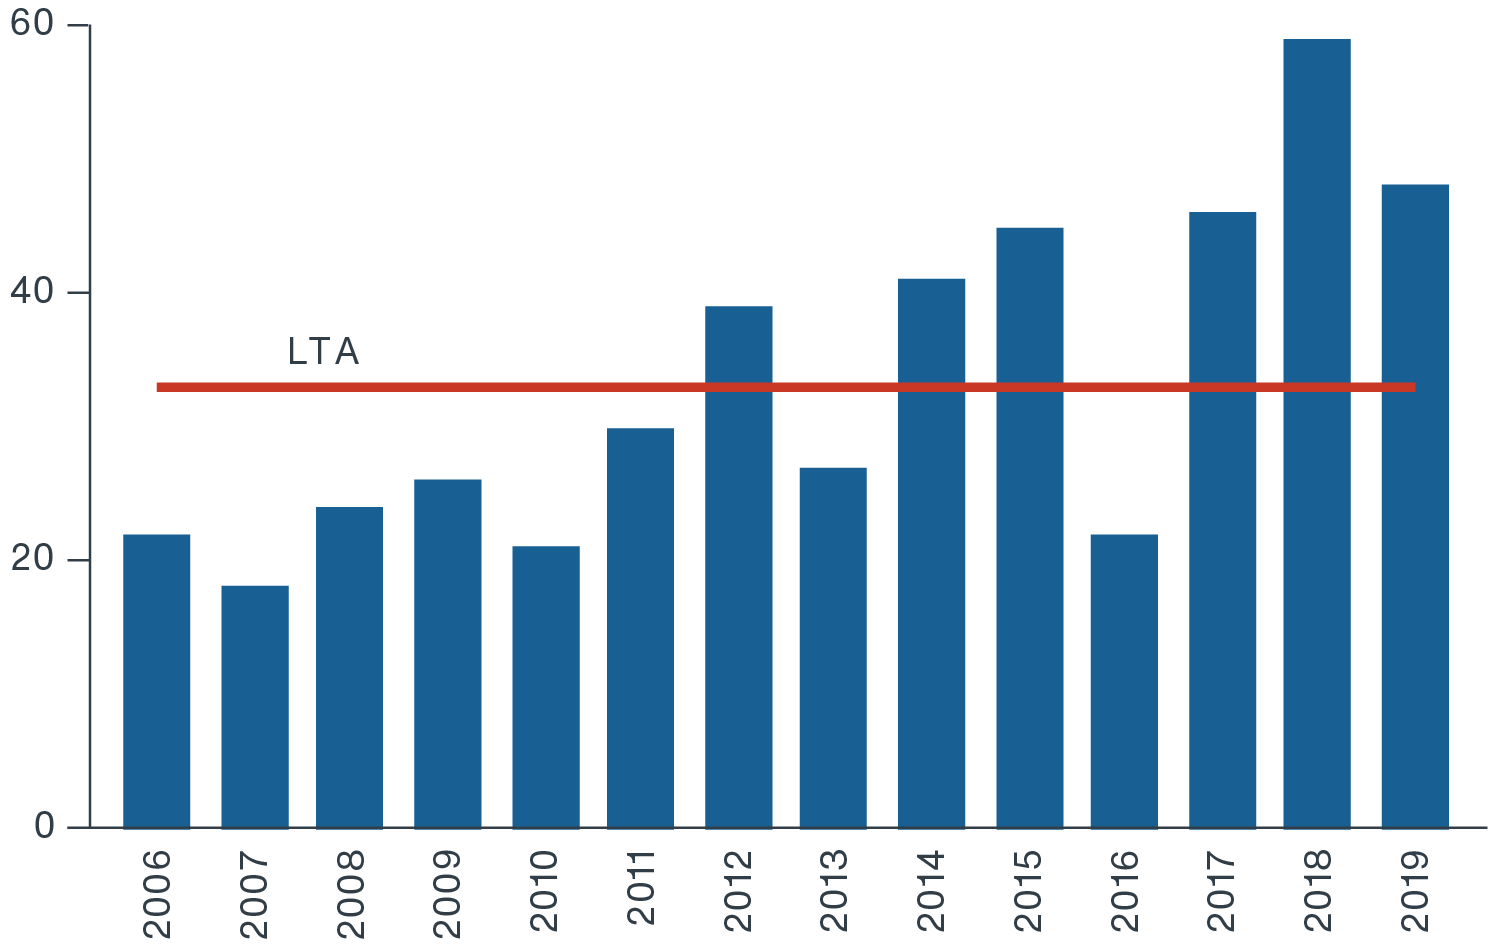 Chart showing number of FDA novel drug approvals 2006-2019